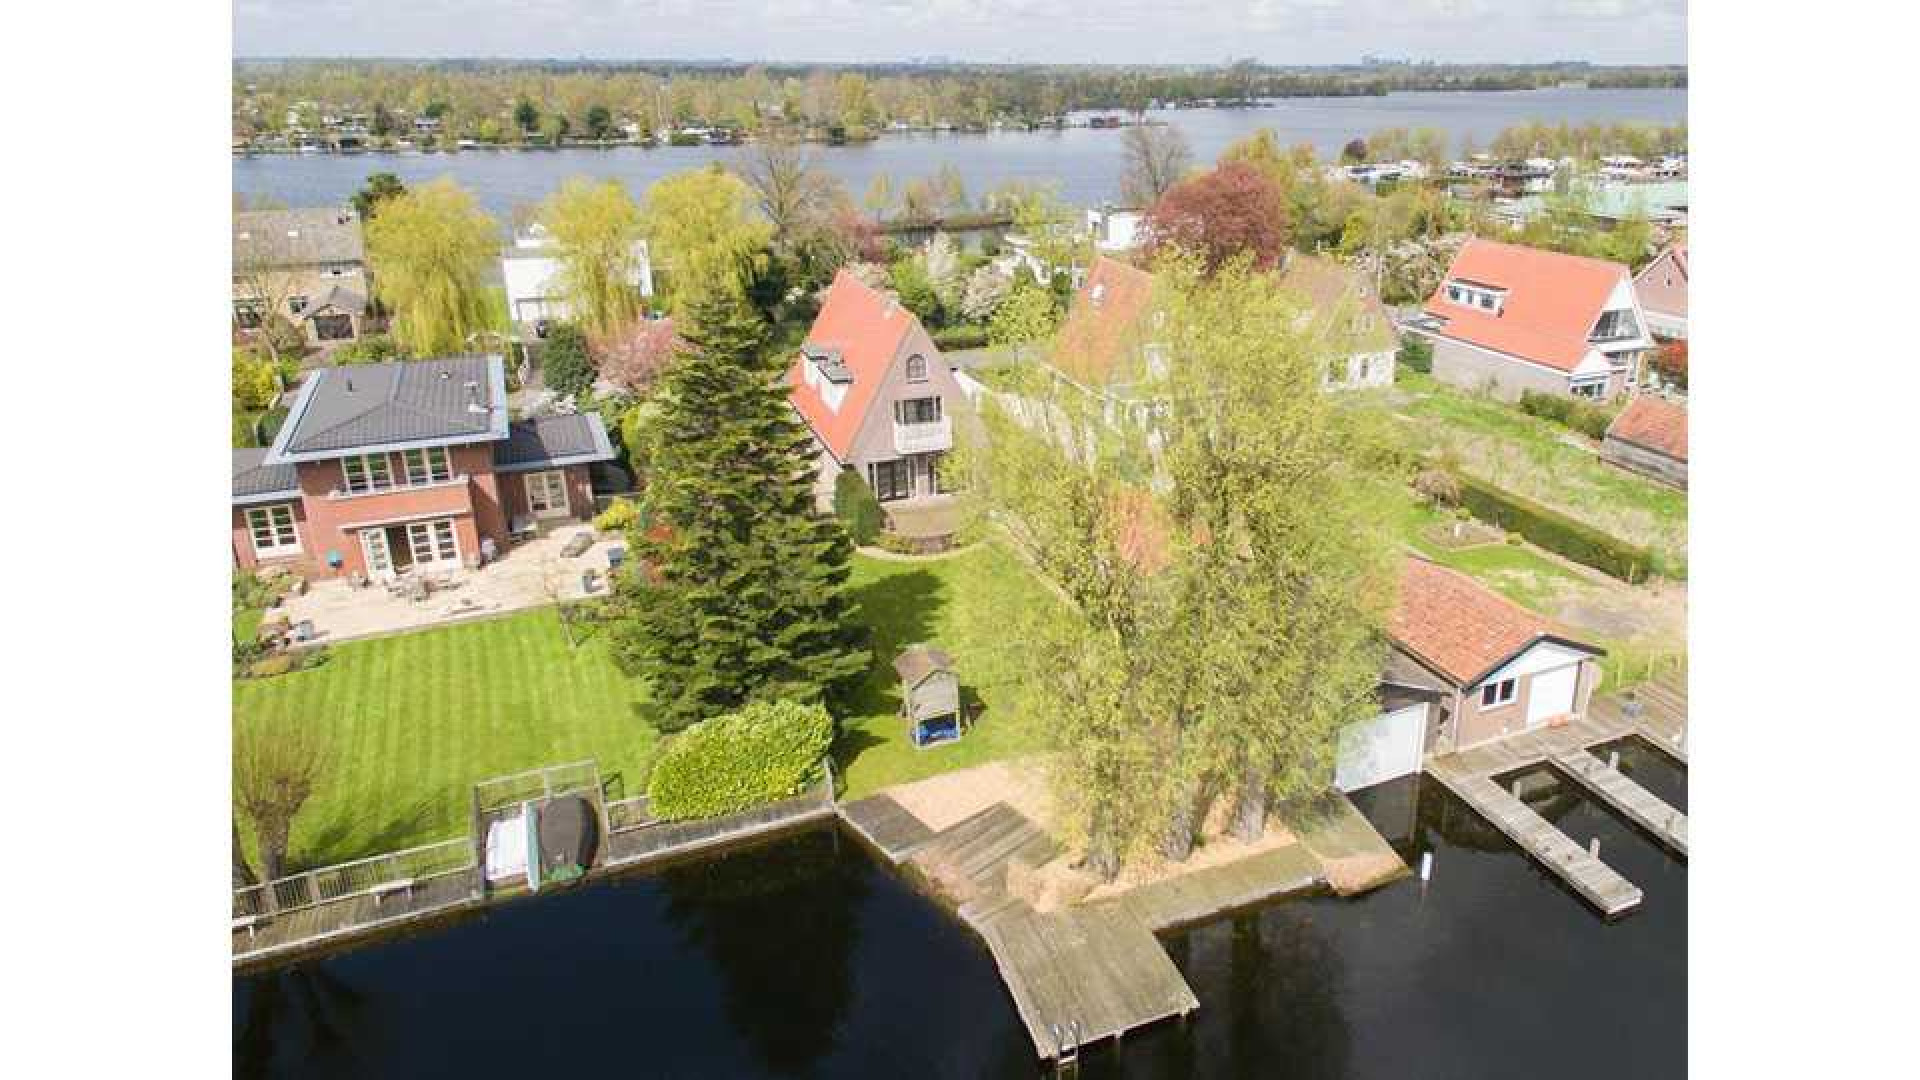 Thomas Berge huurt villa met botenhuis en eiland. Zie foto's 2